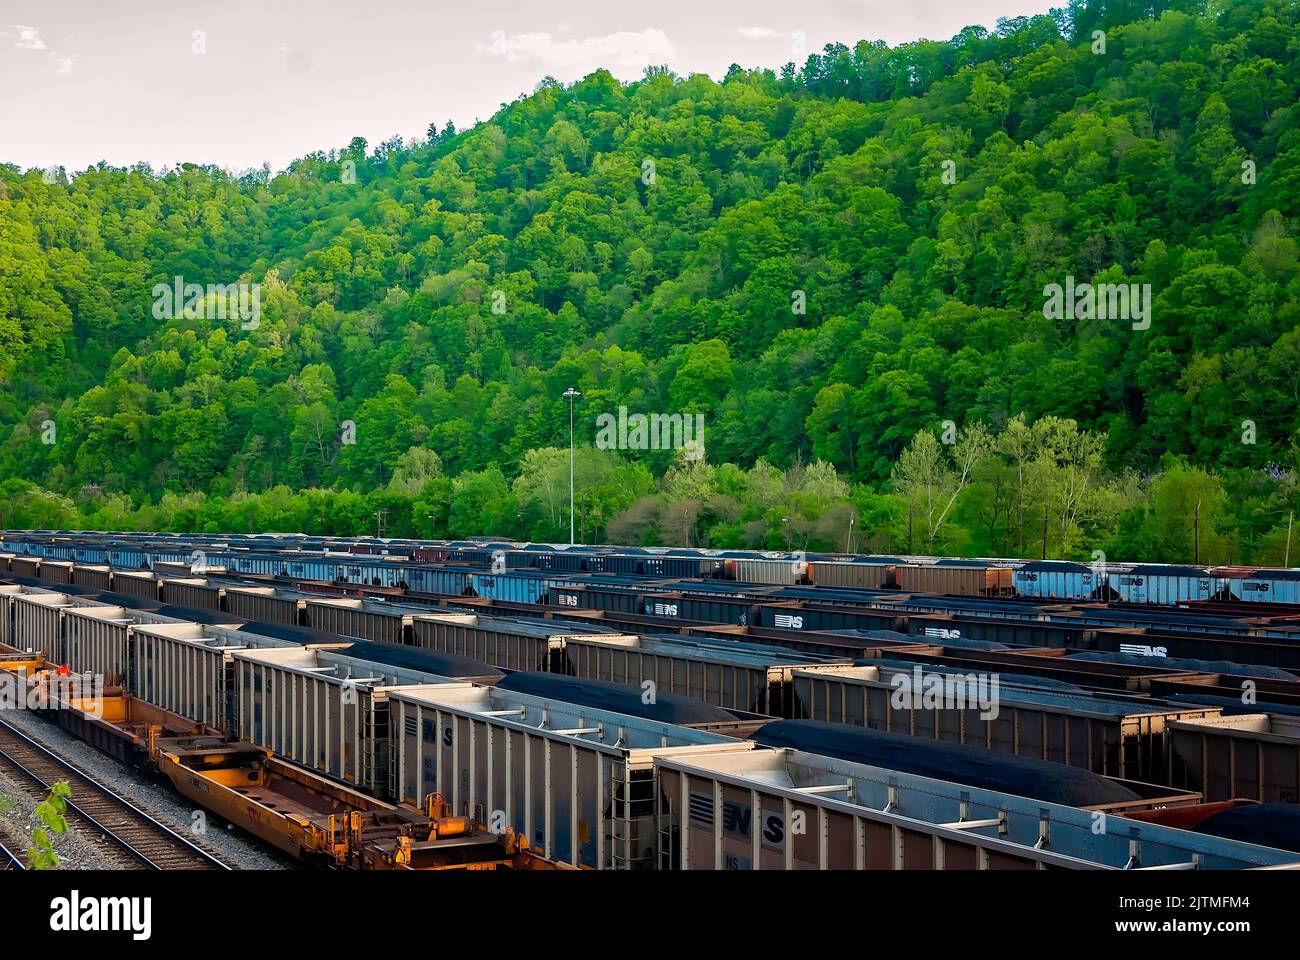 Le auto Norfolk Southern Railway riempite di carbone sono raffigurate presso il williamson railyard, 28 aprile 2010, a Williamson, West Virginia. Foto Stock